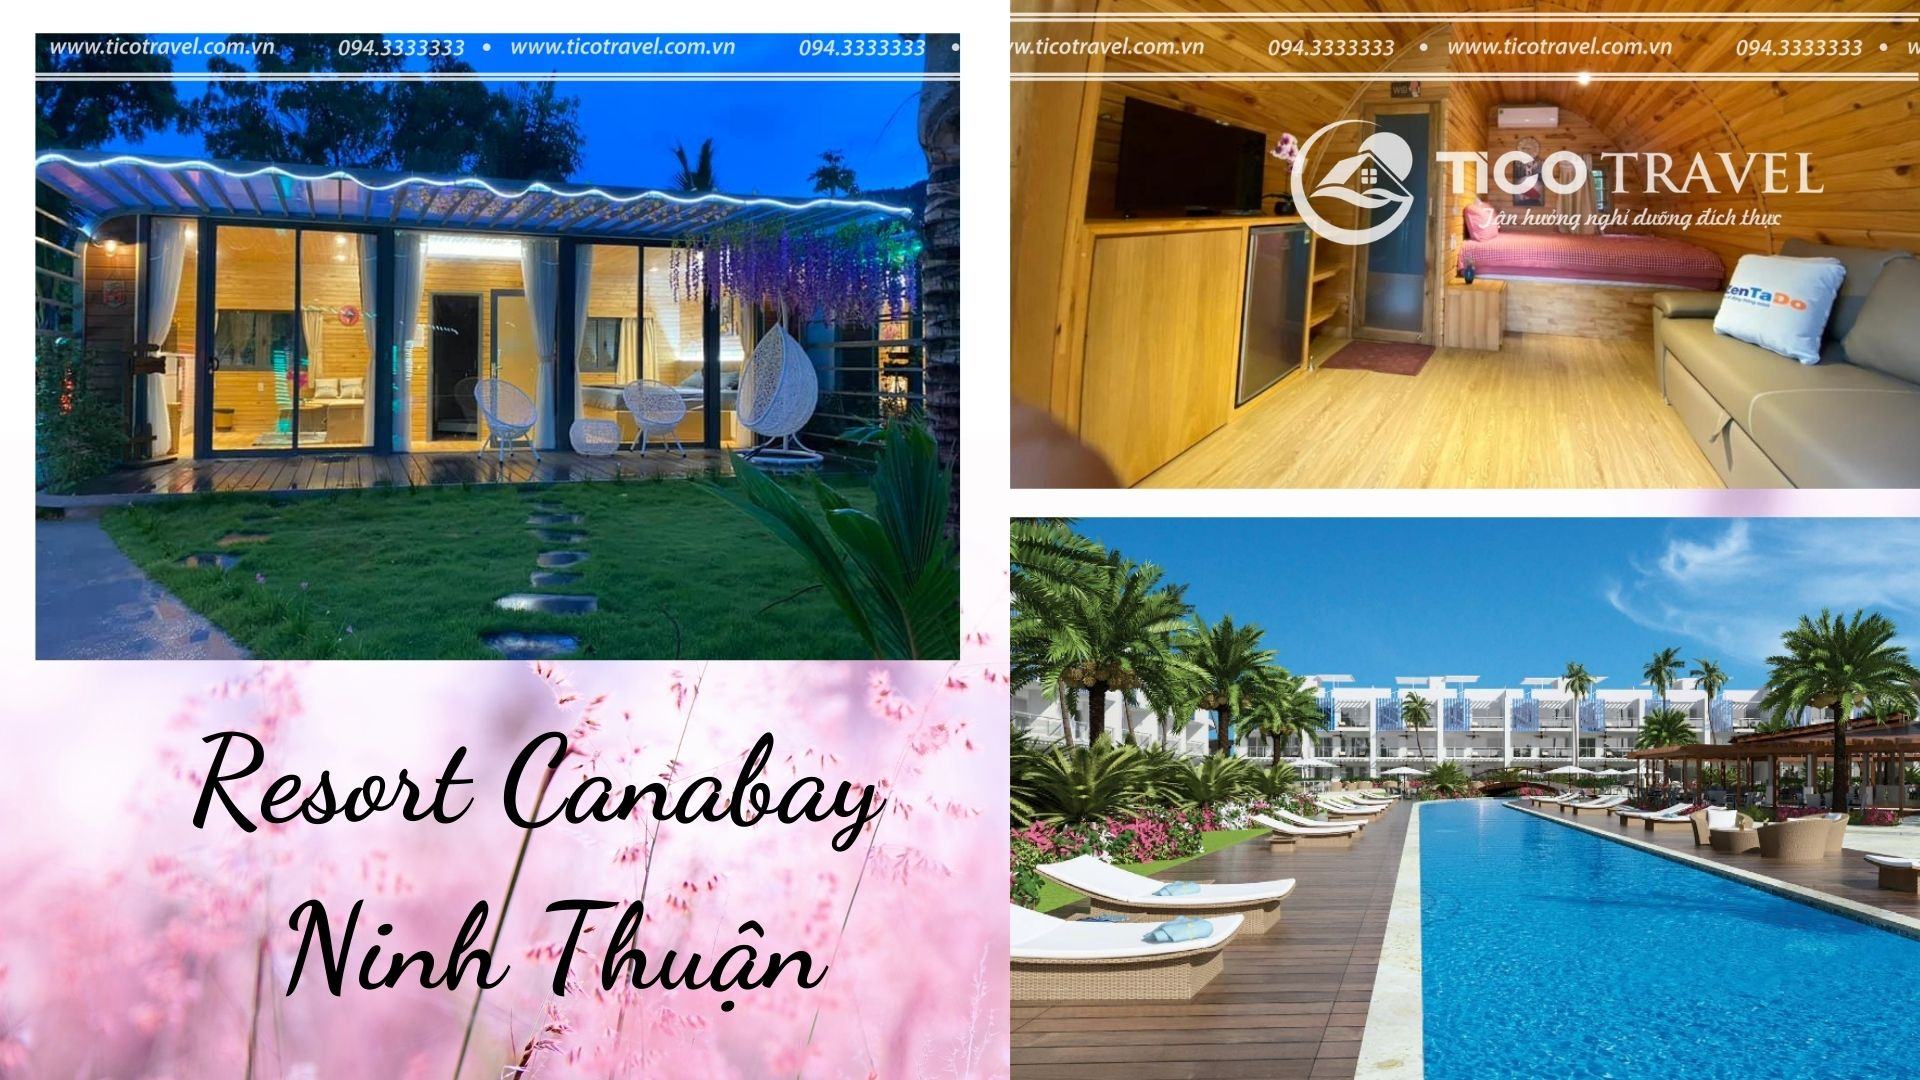 ảnh chụp Resort Canabay Ninh Thuận